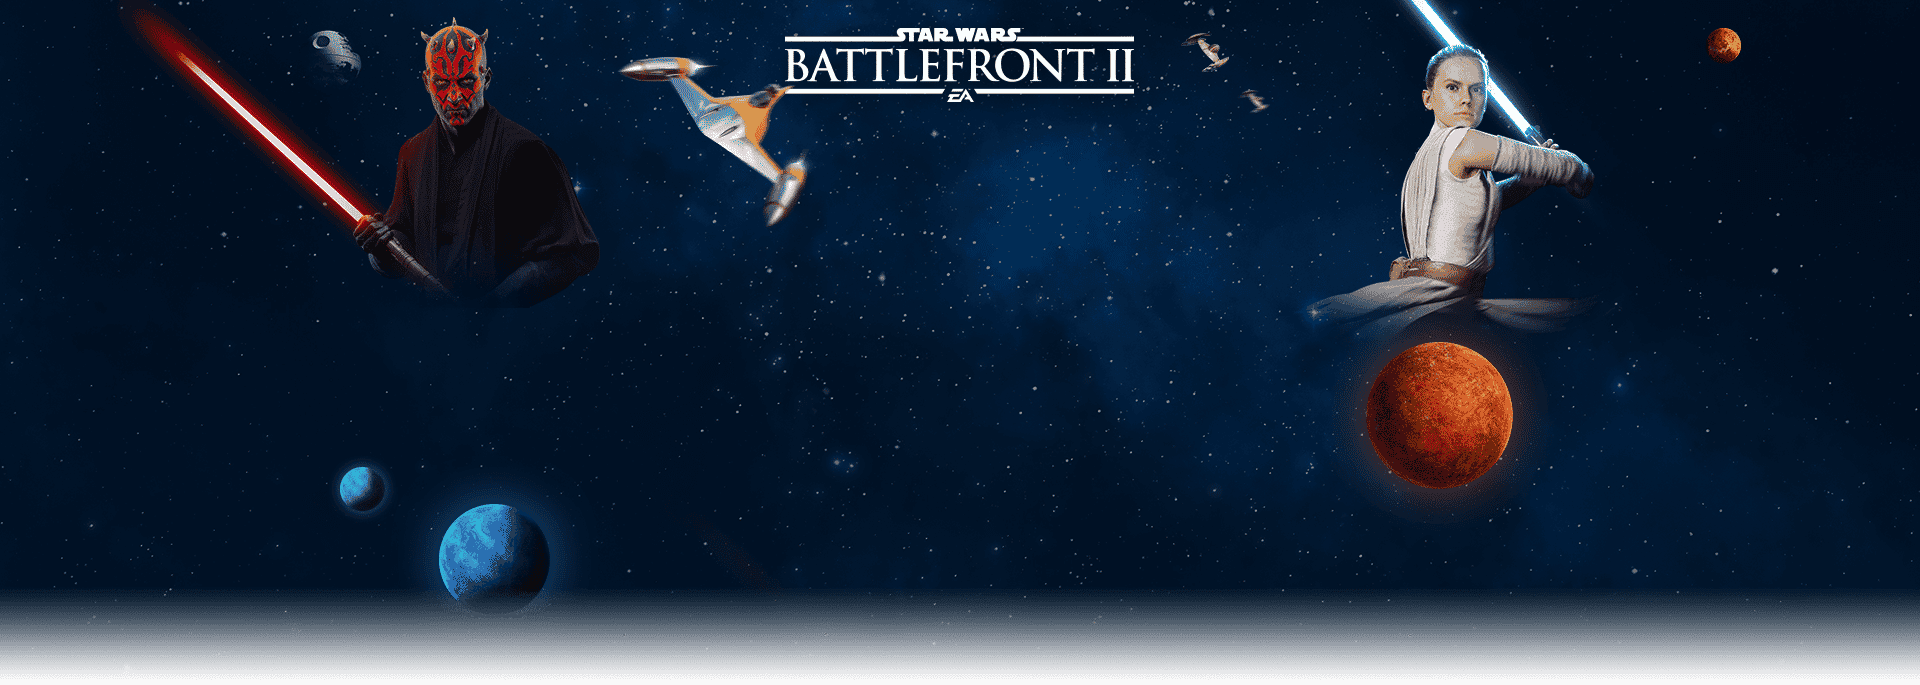 STAR WARS Battlefront II: Celebration Edition EU Steam Altergift - background